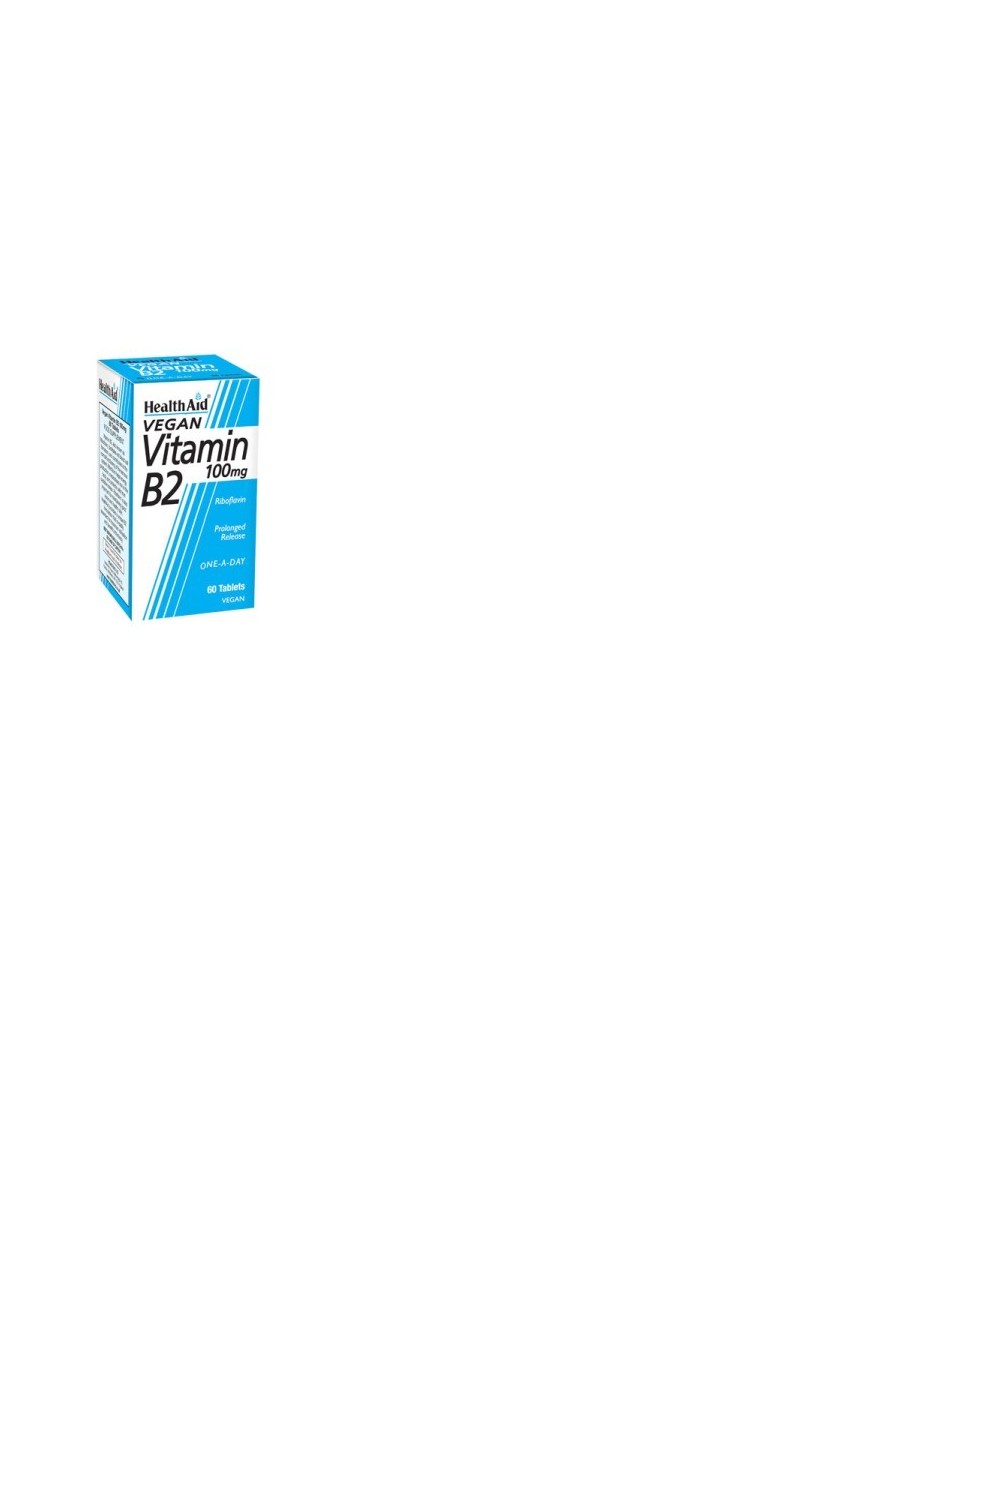 Health Aid Vitamina B2 Riboflavina 100 Mg 60 Comp